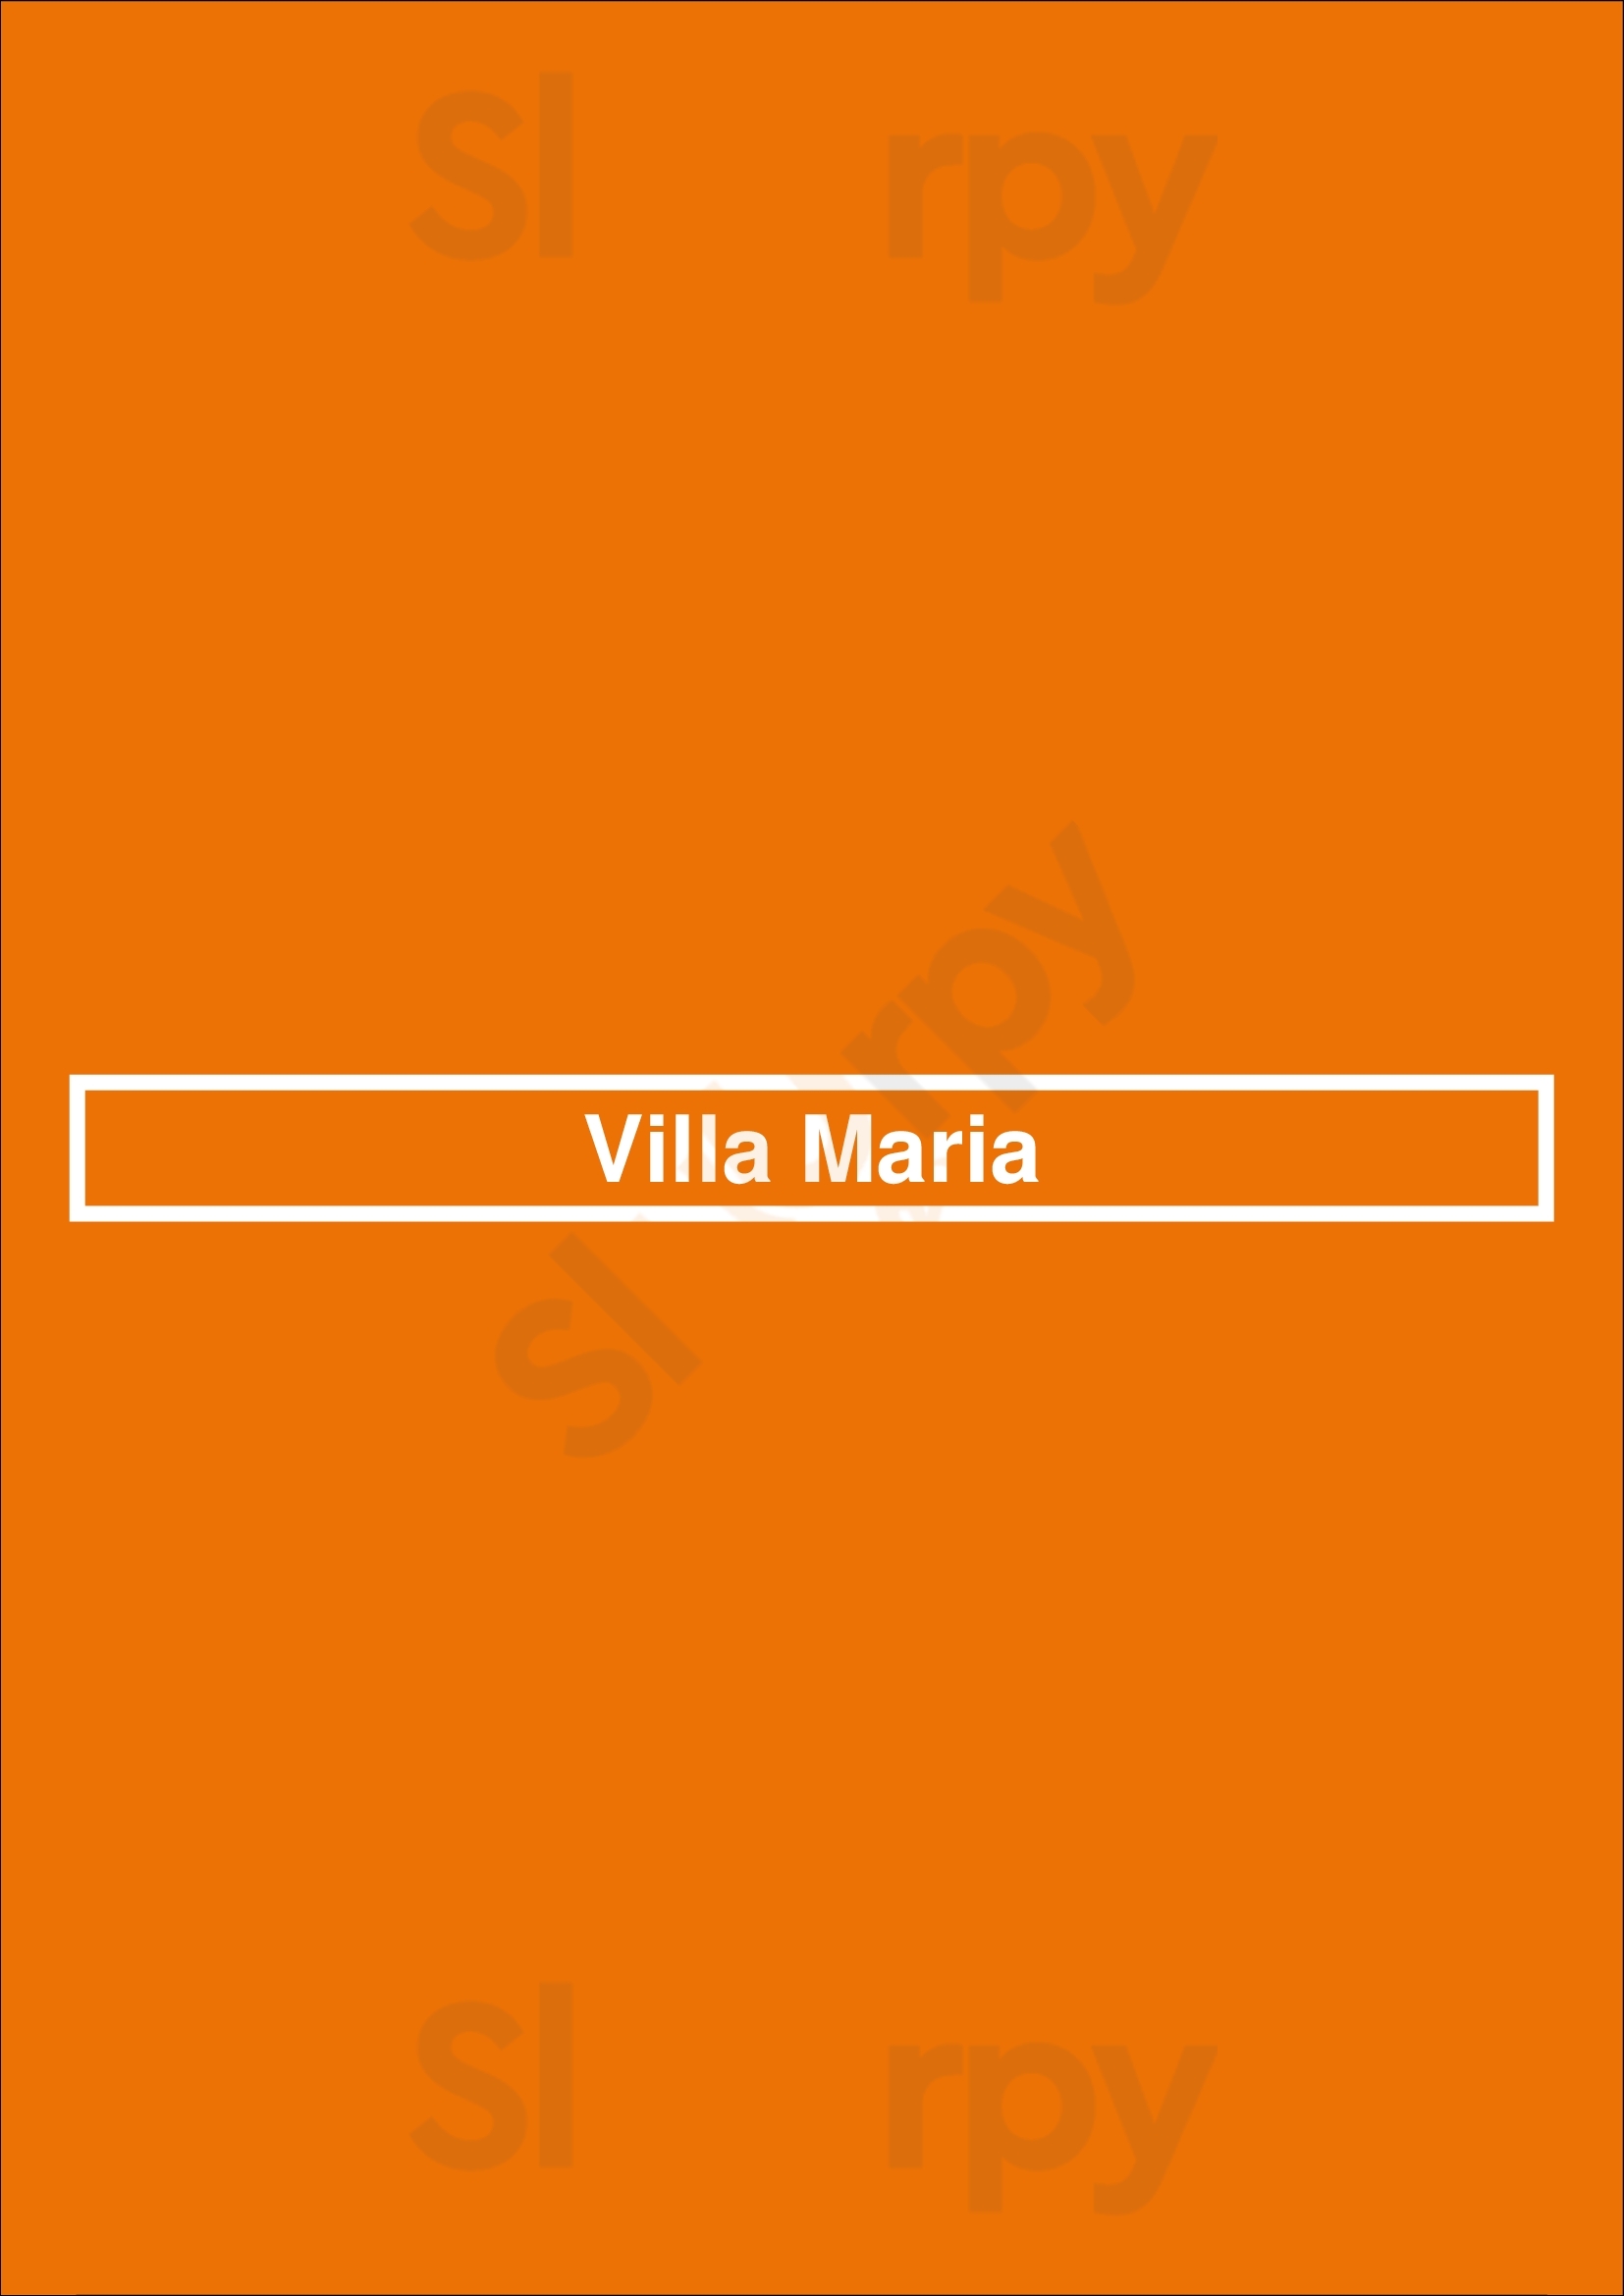 Villa Maria Bethpage Menu - 1